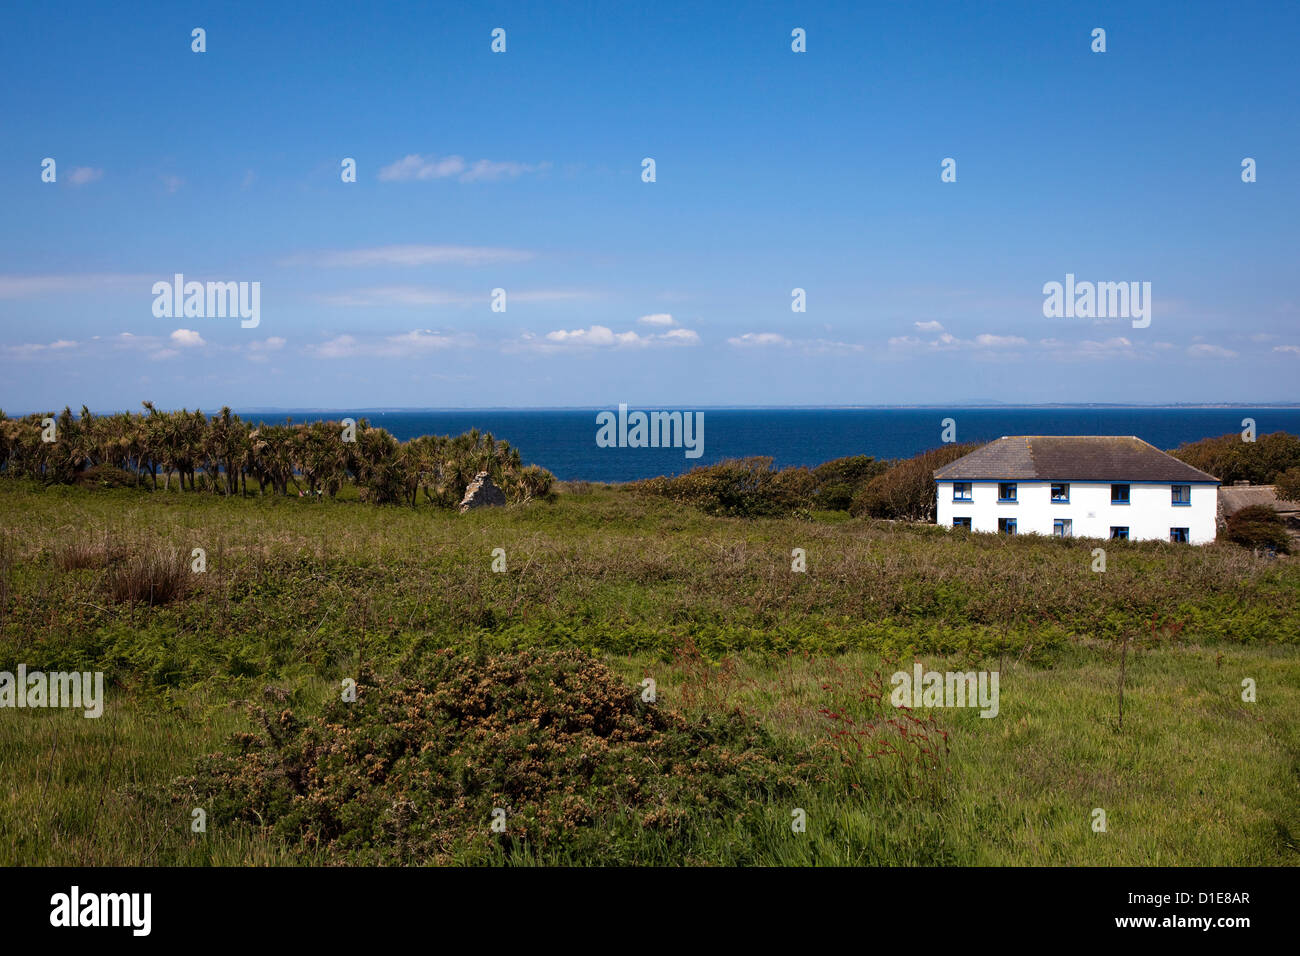 La Maison du Prince des îles Saltee, sur grand Saltee au large de la côte de Co. Wexford, Irlande. Banque D'Images